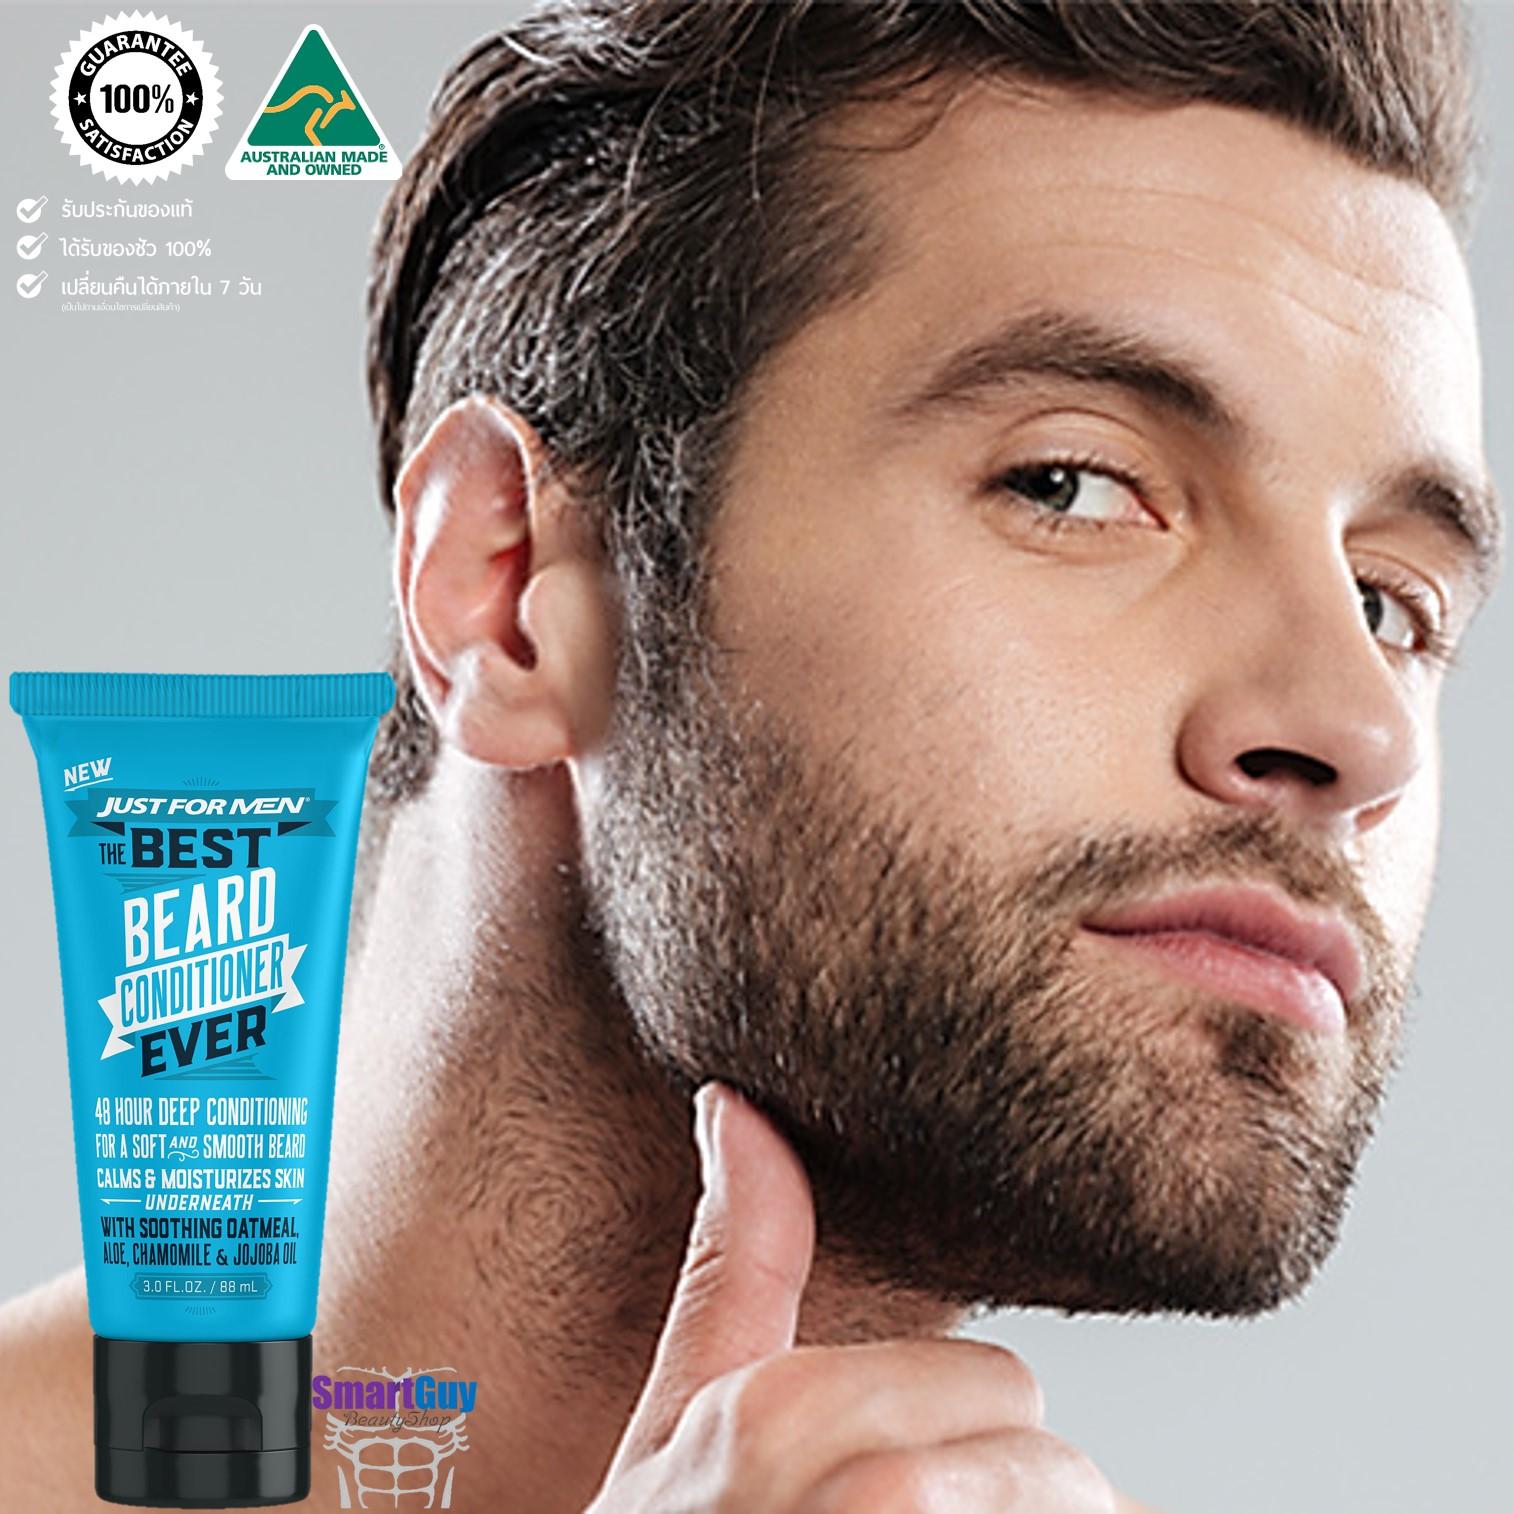 Just For Men Our Best Beard Conditioner Ever 88ml. ผลิตภัณฑ์บำรุง หนวด เครา จอน ให้แข็งแรงนุ่มลื่นเงางามเป็นธรรมชาติ สินค้านำเข้าของแท้จากประเทศออสเตรเลีย